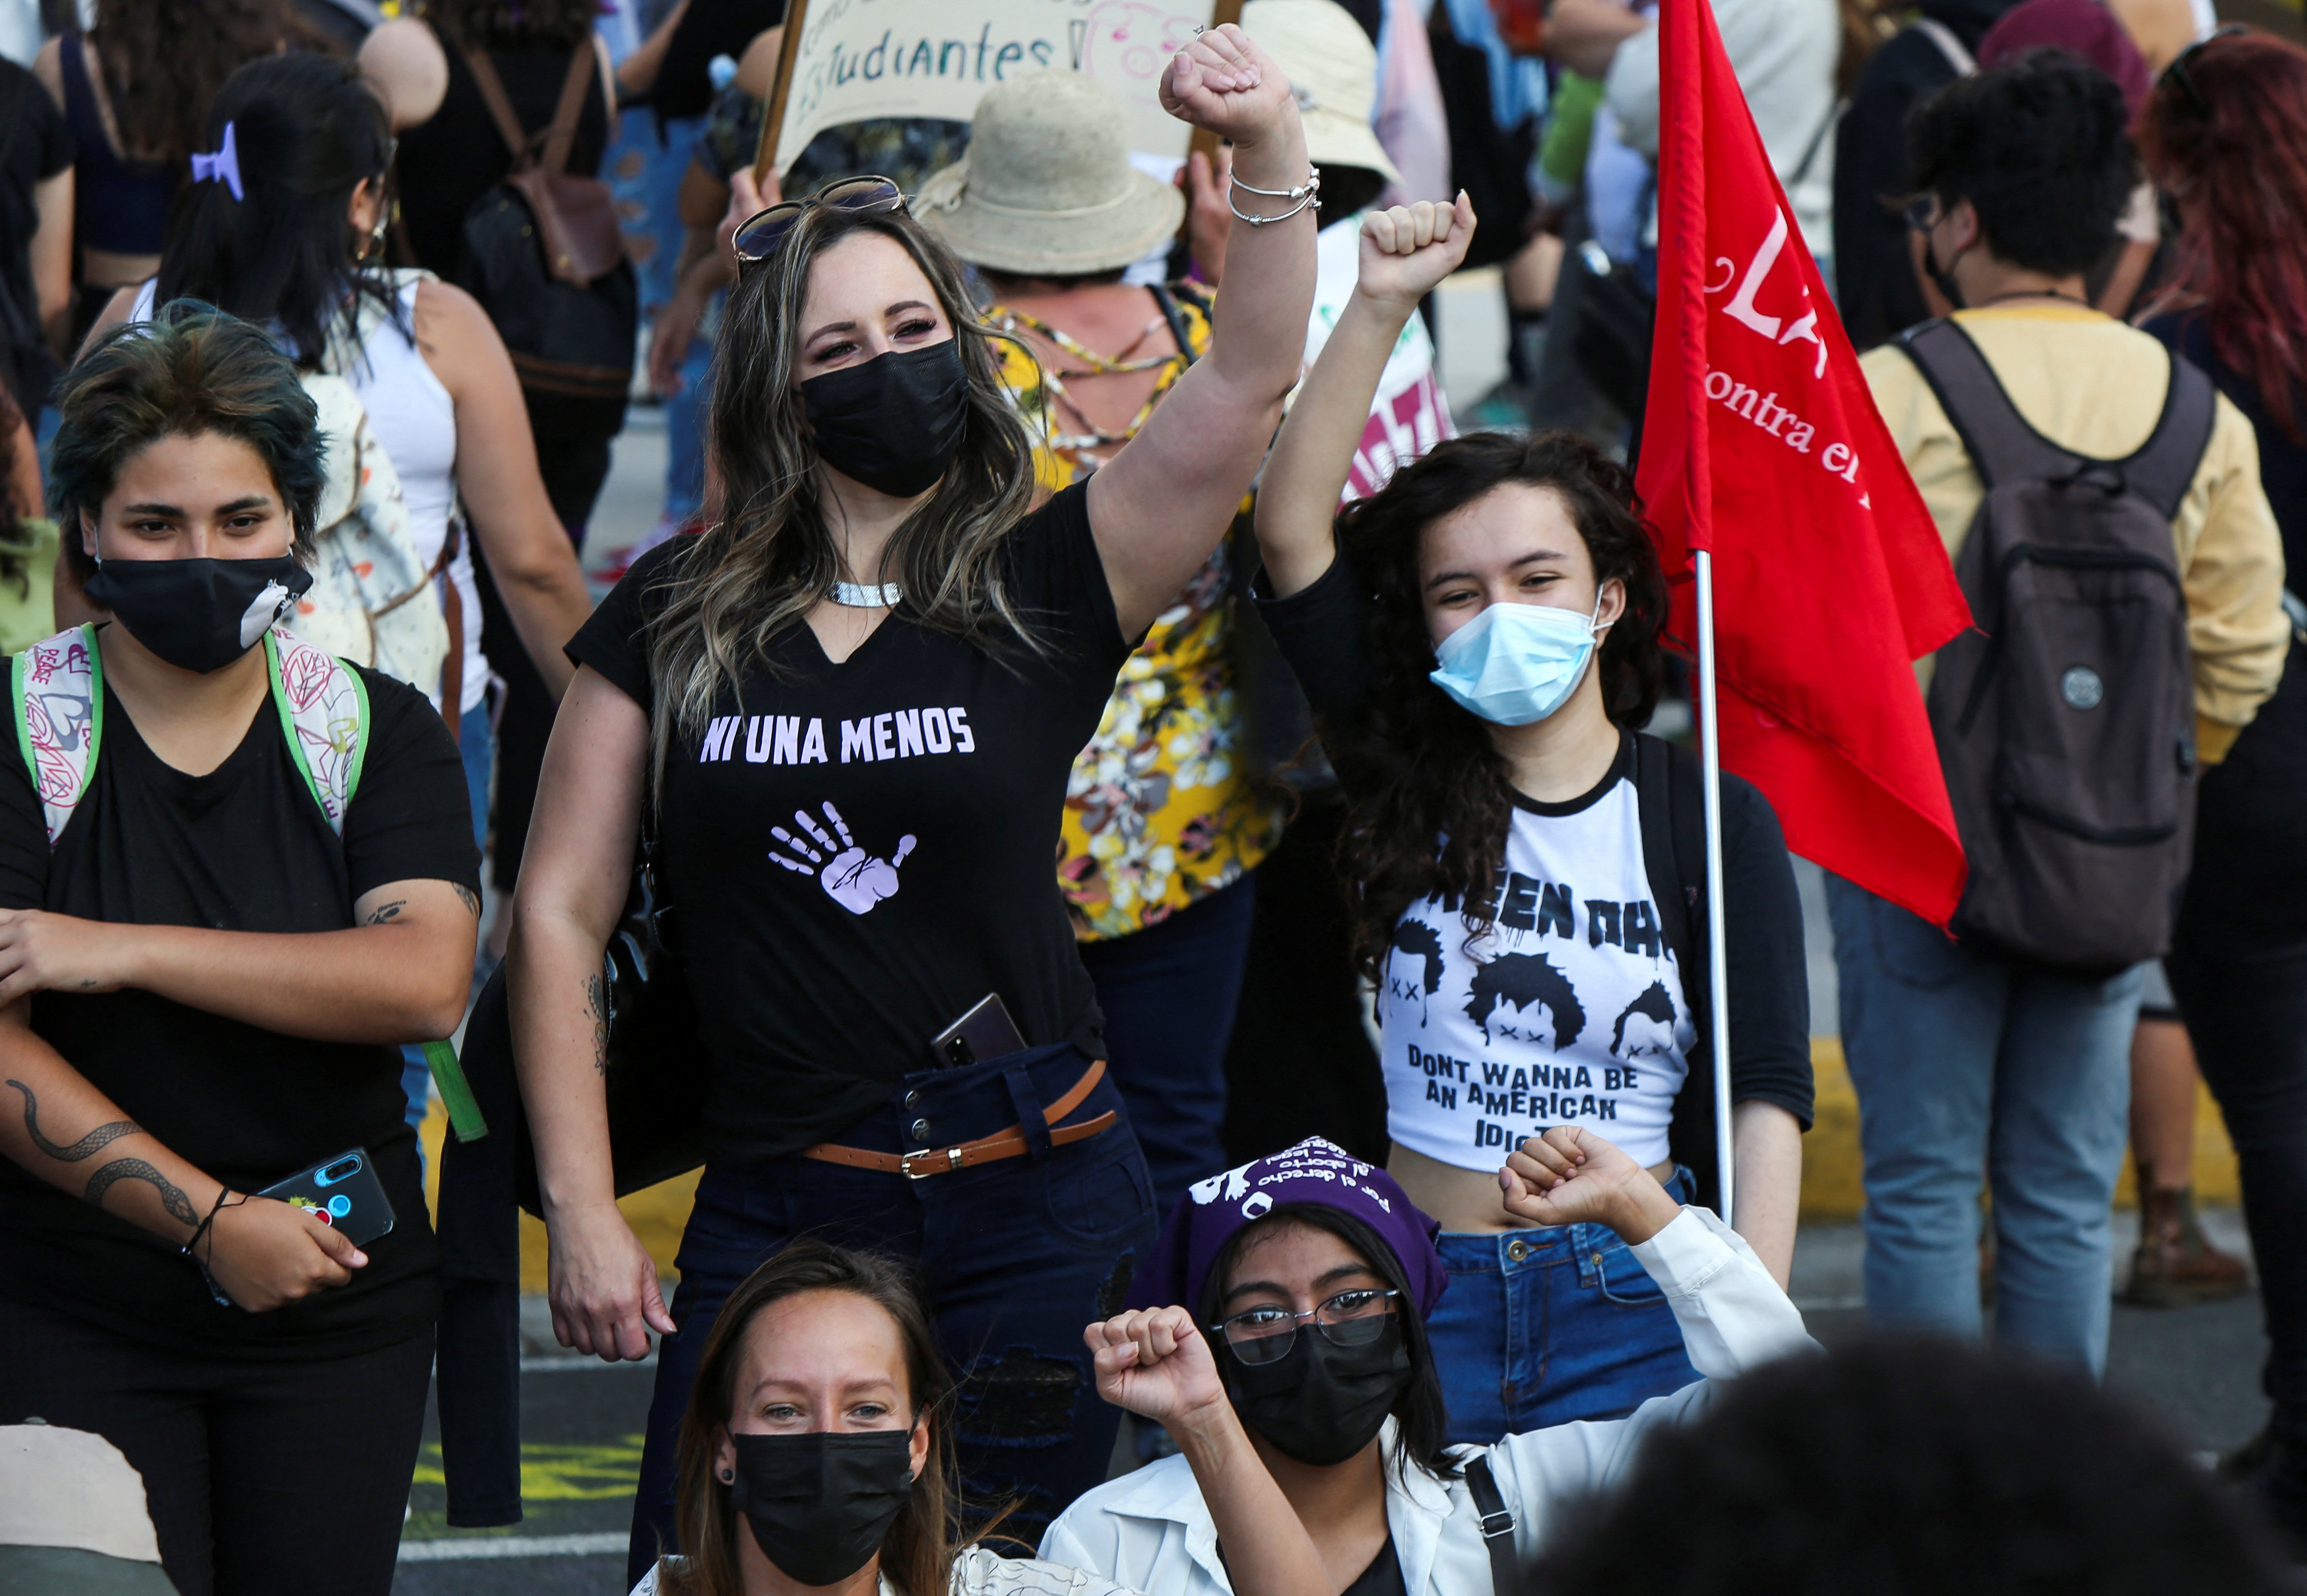 La semana pasada, cientos de mujeres protestaron ante el ataque sexual a una mujer extranjera (REUTERS/Mayela Lopez)